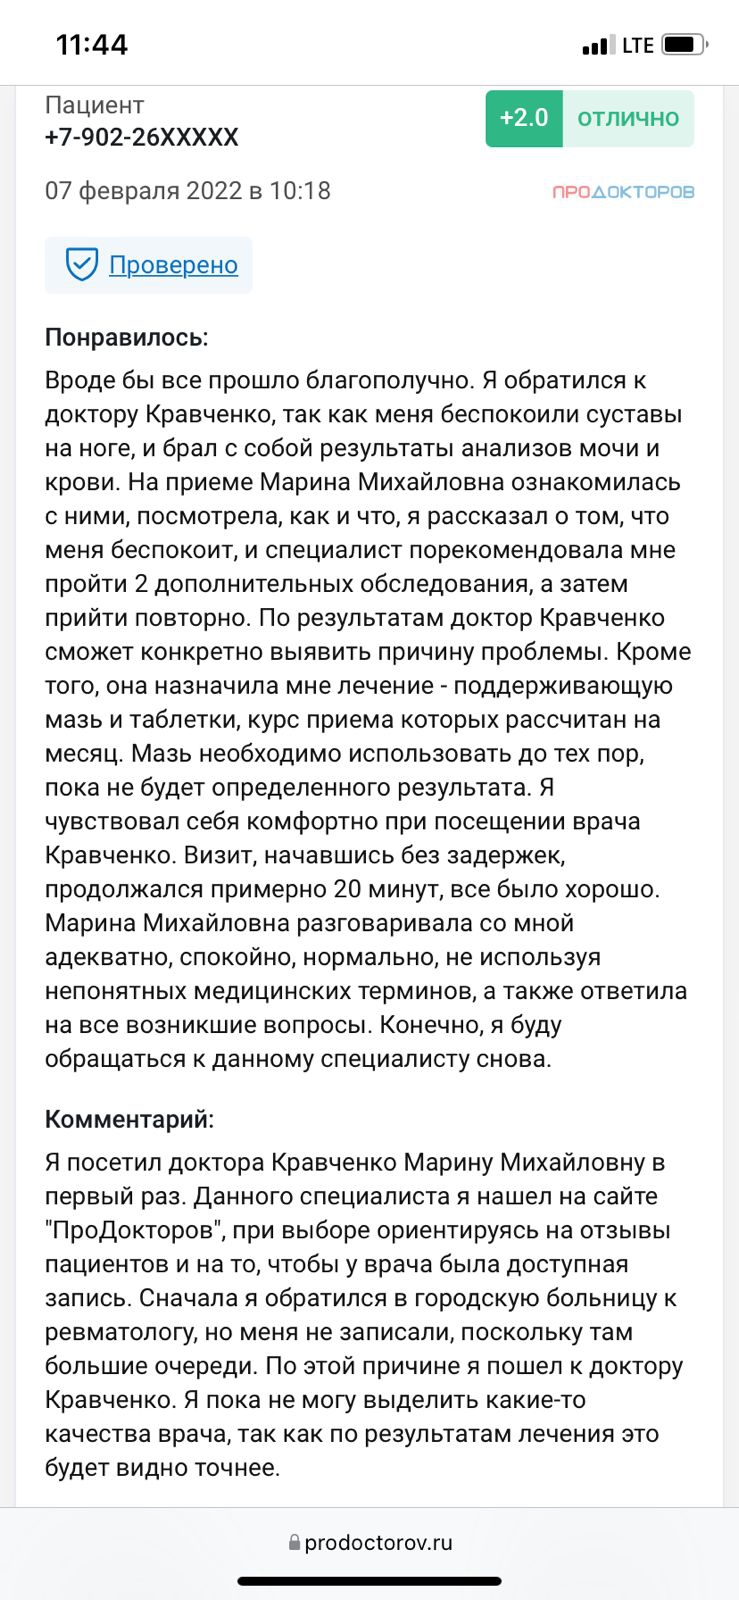 Отзывы о Кравченко Марине Михайловне с сайта ПроДокторов